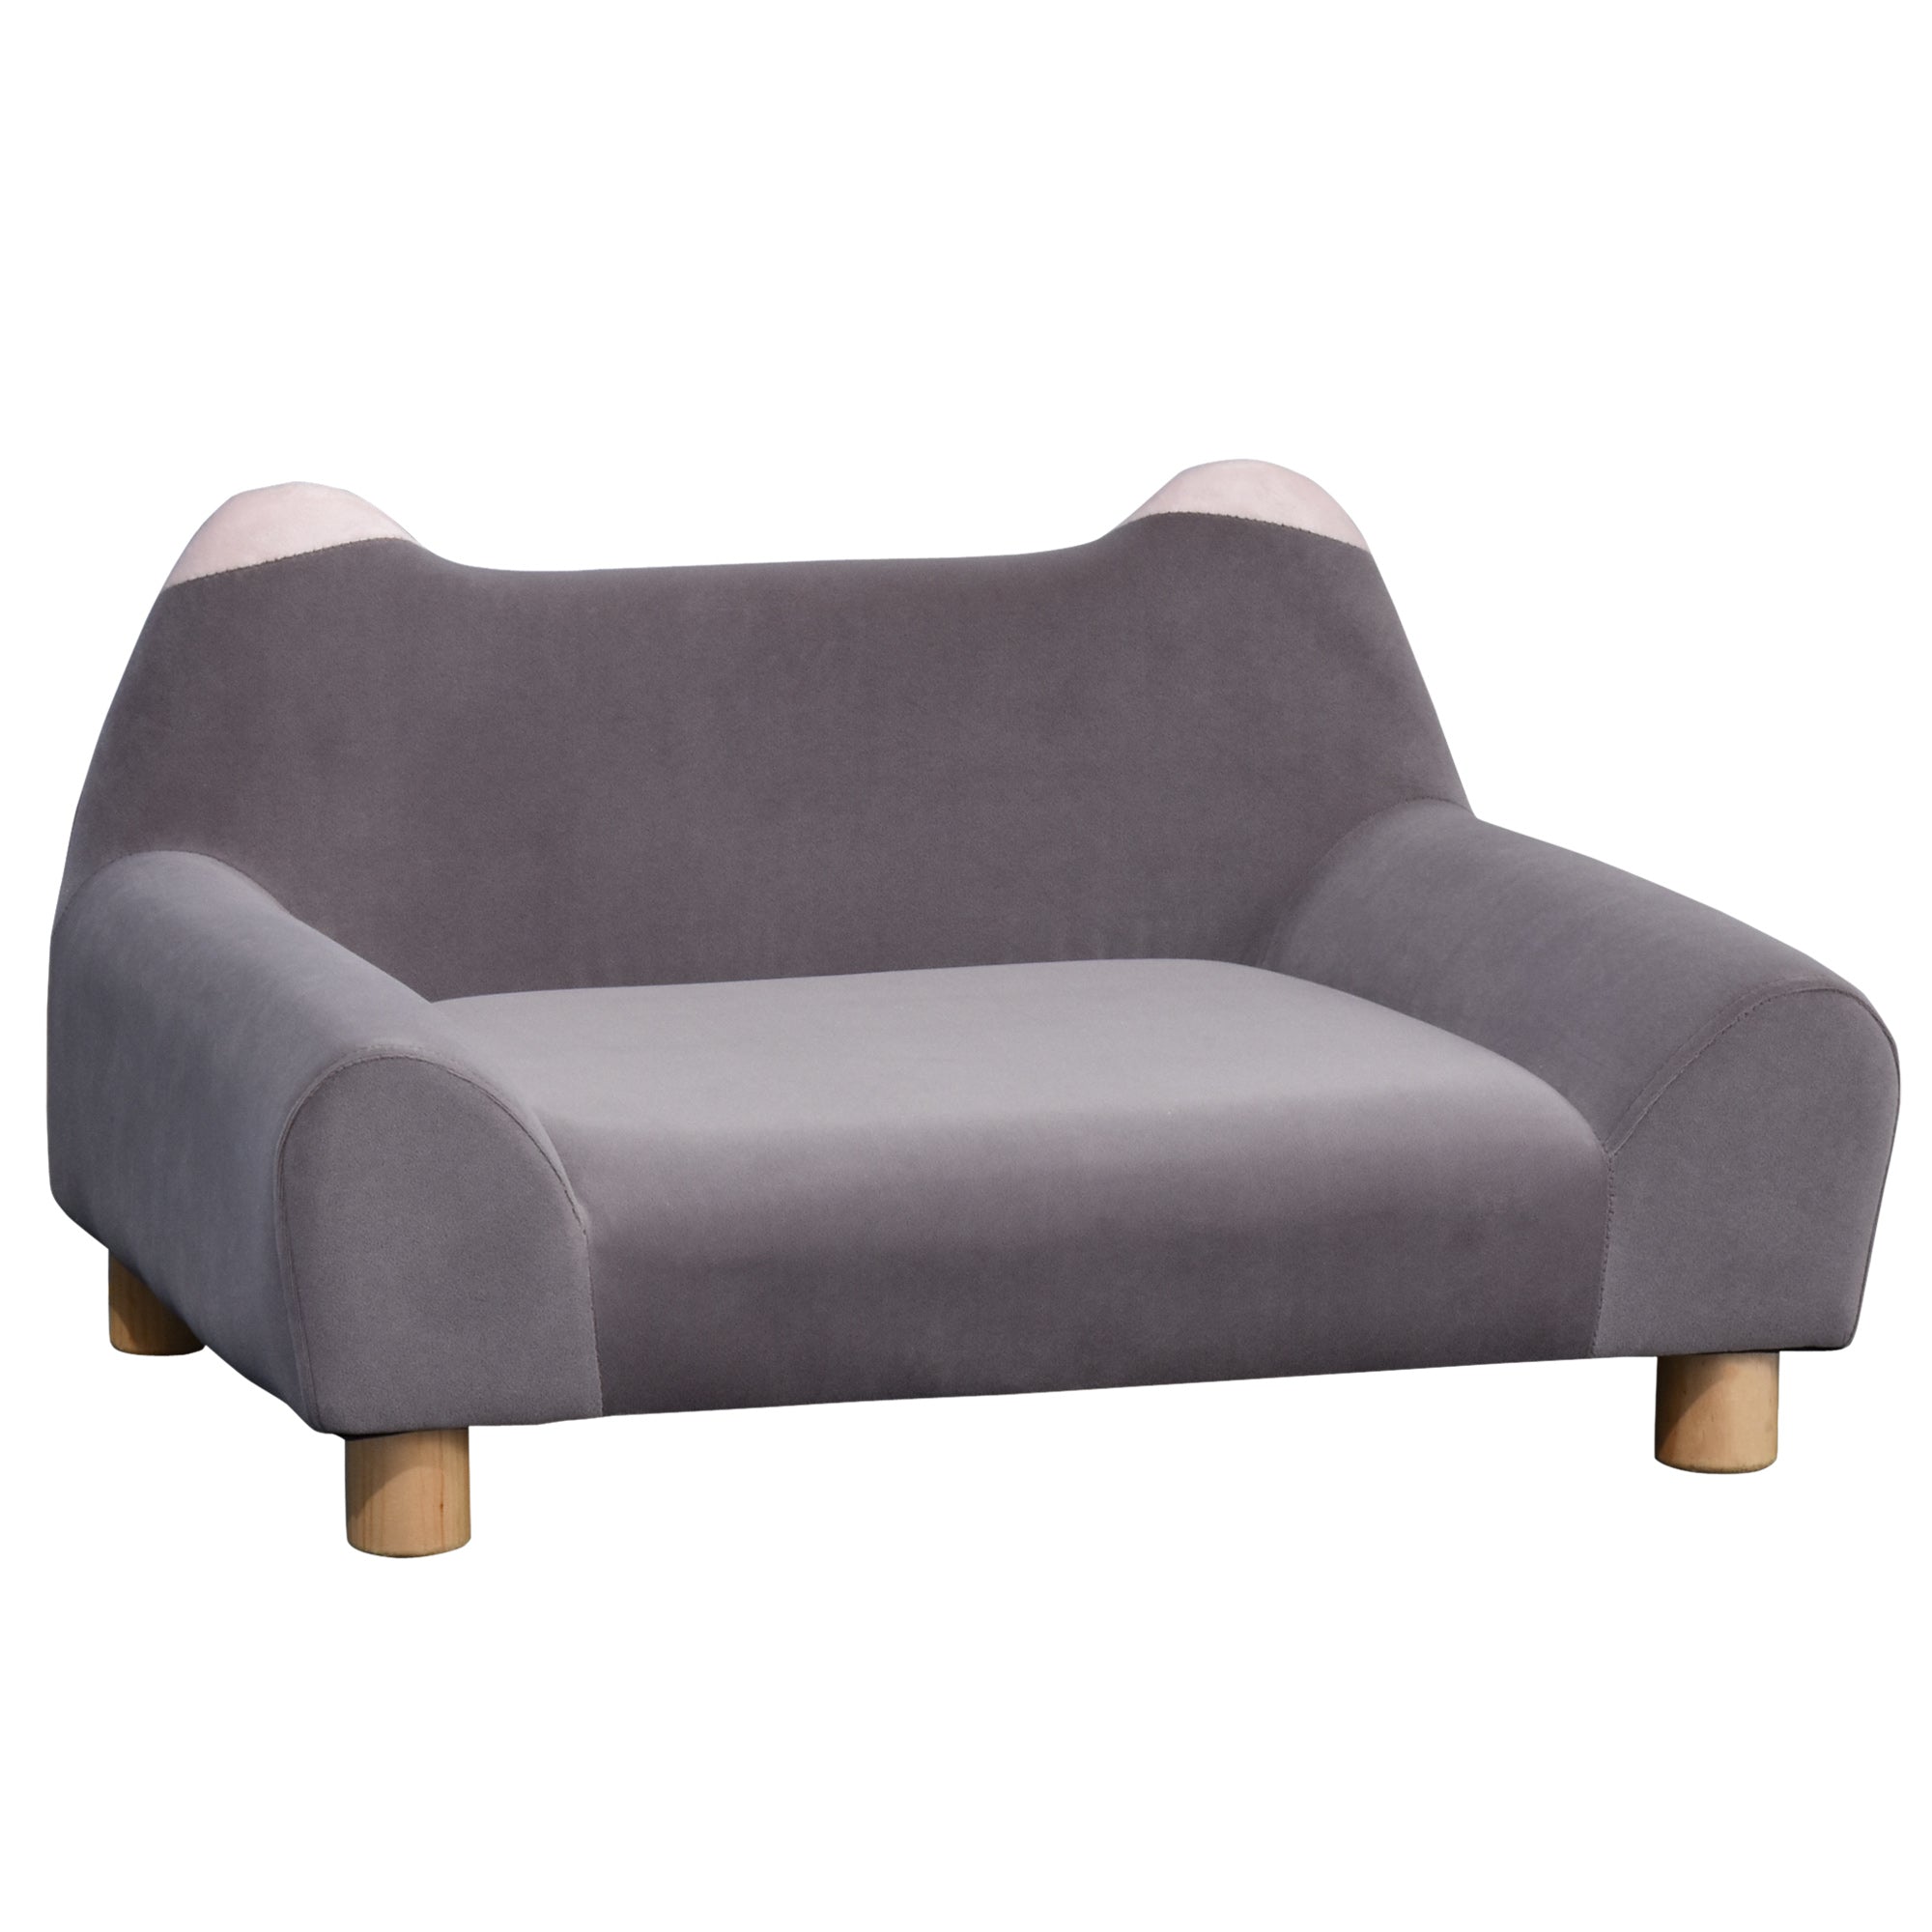 Faux Velvet Upholstered Sponge Small Pets Sofa Bed Grey